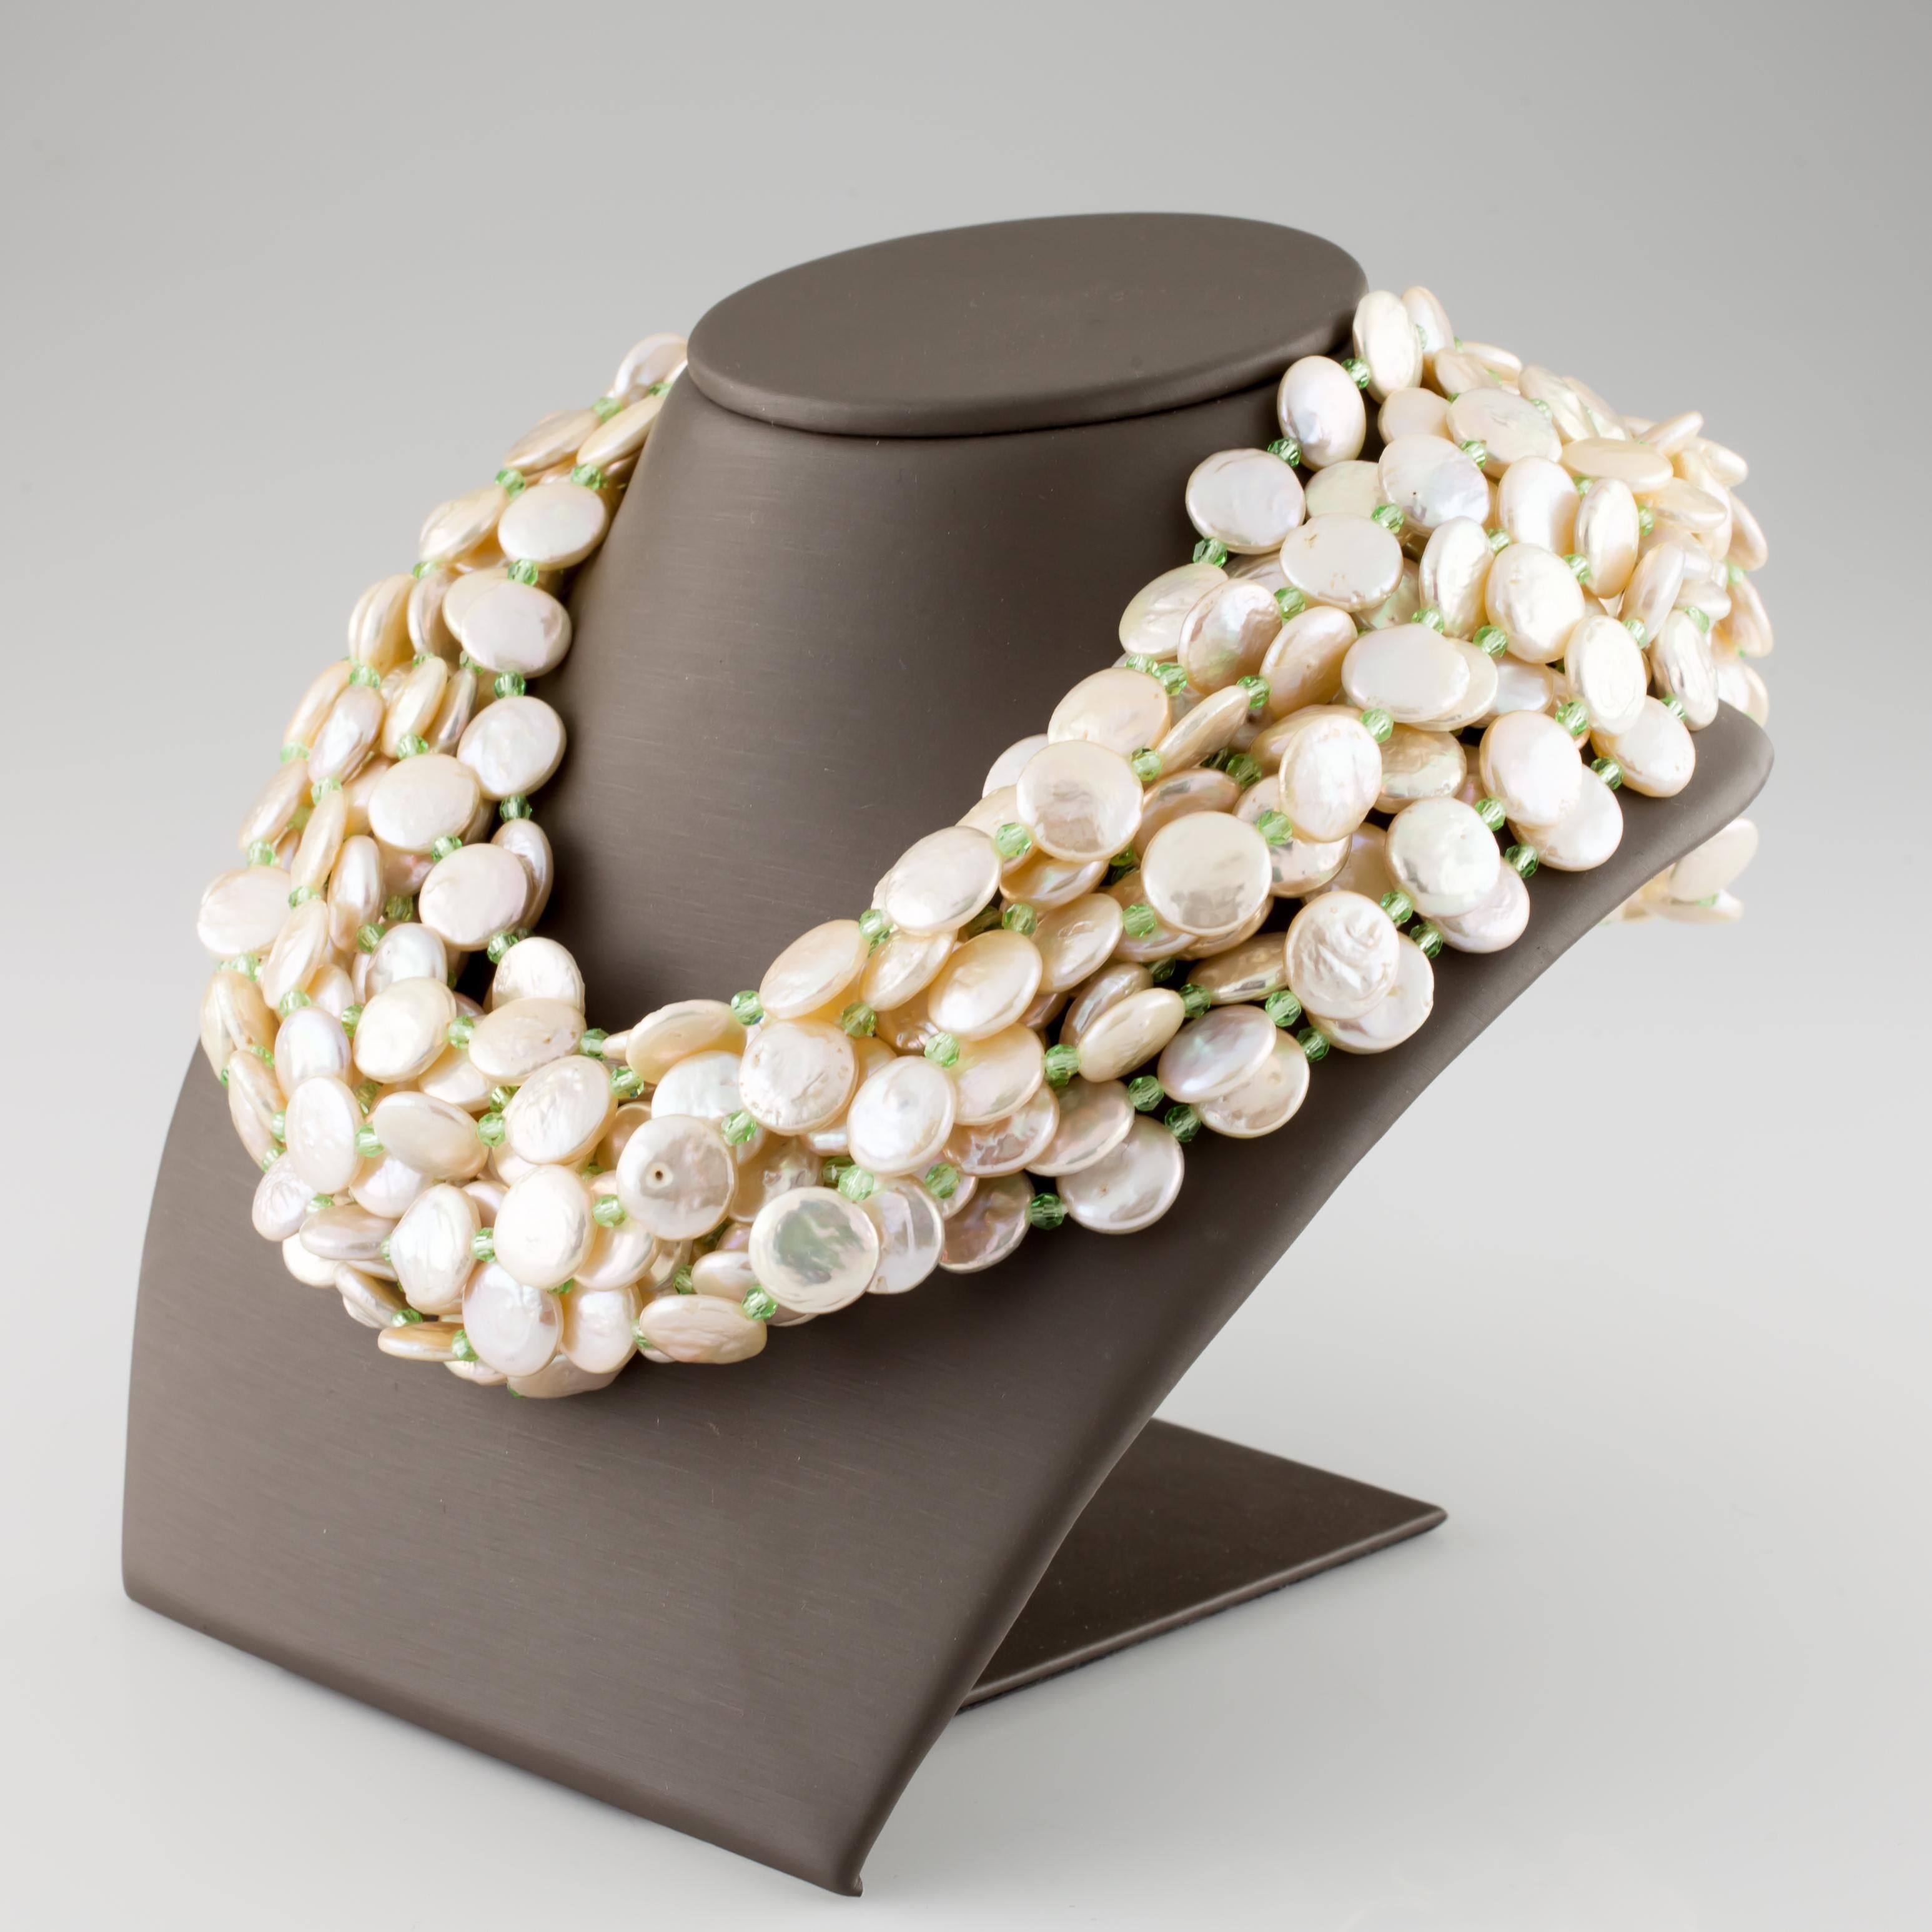 L'étonnant collier de perles multibrins de Cristina Ferrare
Comprend 11 rangs de perles de culture intercalées de petites pierres vertes taillées en briolette
Diamètre approximatif des perles de monnaie = 10 - 11 mm
Comprend un fermoir en or jaune